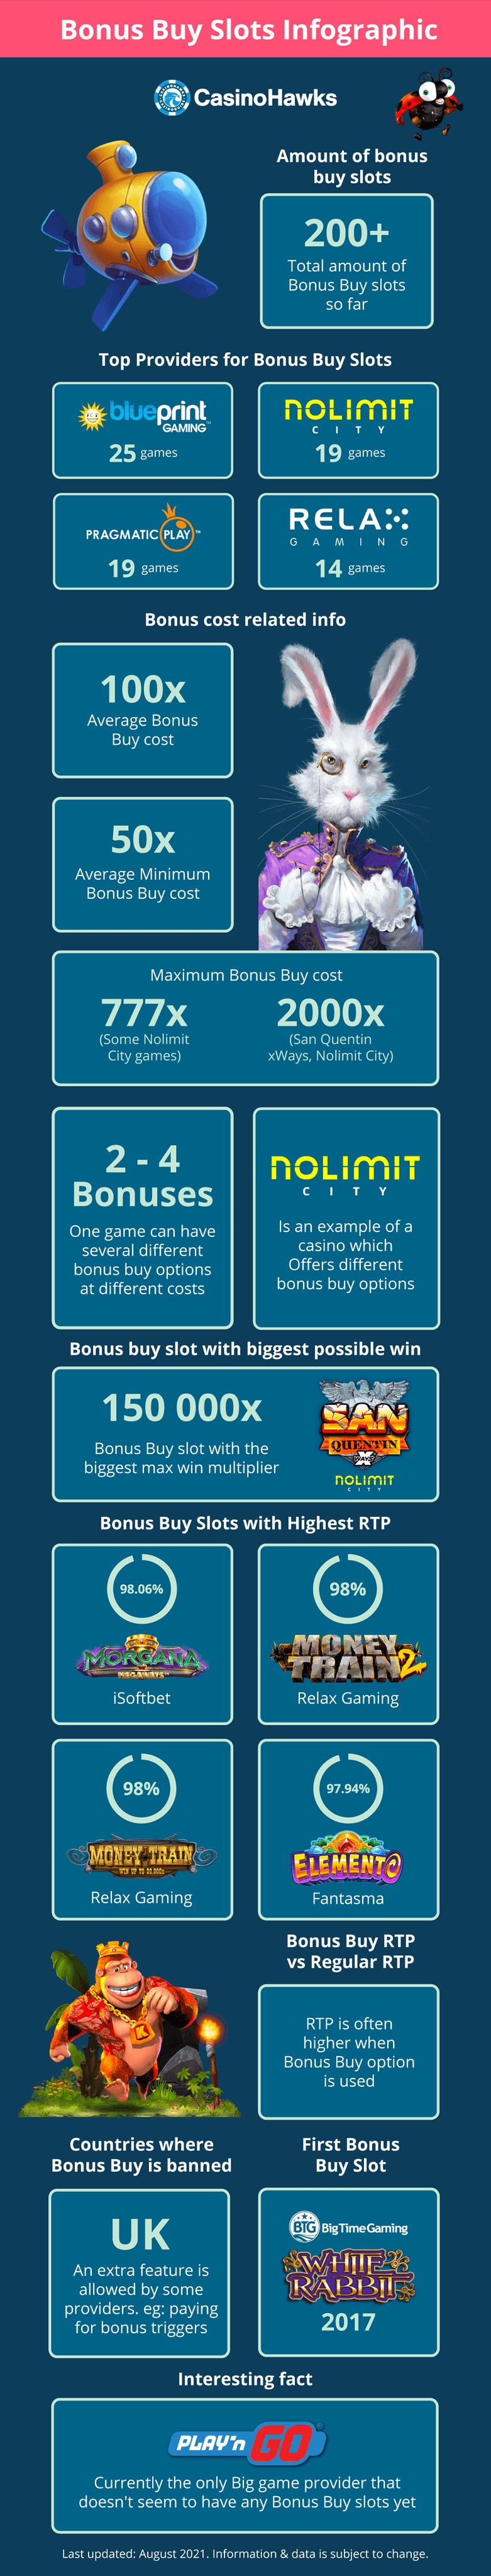 Are bonus buy slots legal in the UK? Top Bonus Buy Slots, Top Bonus Buy Game Providers, High RTP Bonus Buy Online Slots